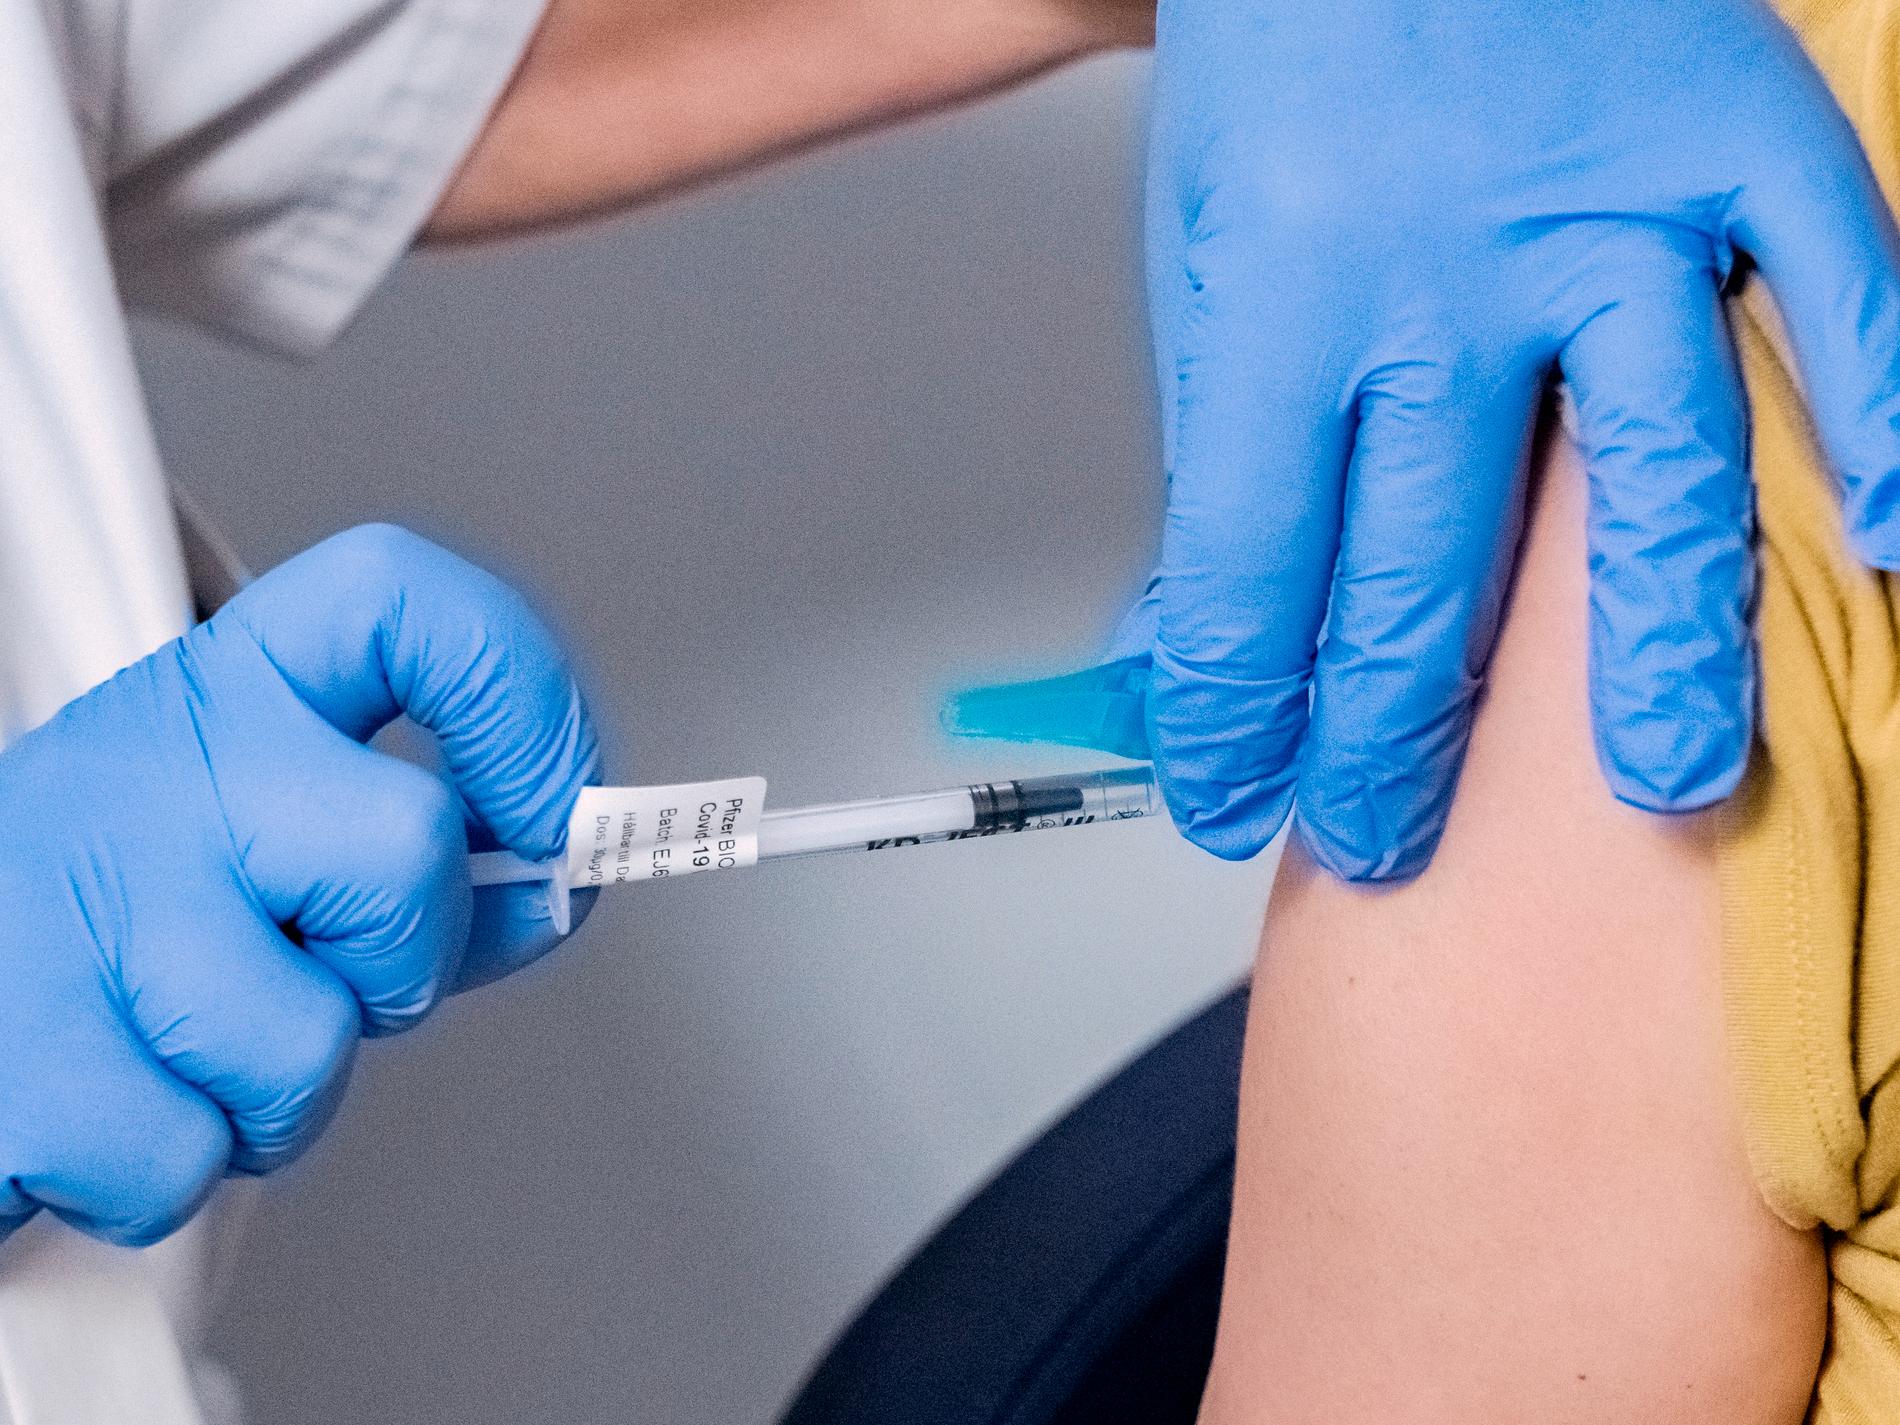 WHO: Fler än 150 miljoner liv räddade av vaccin